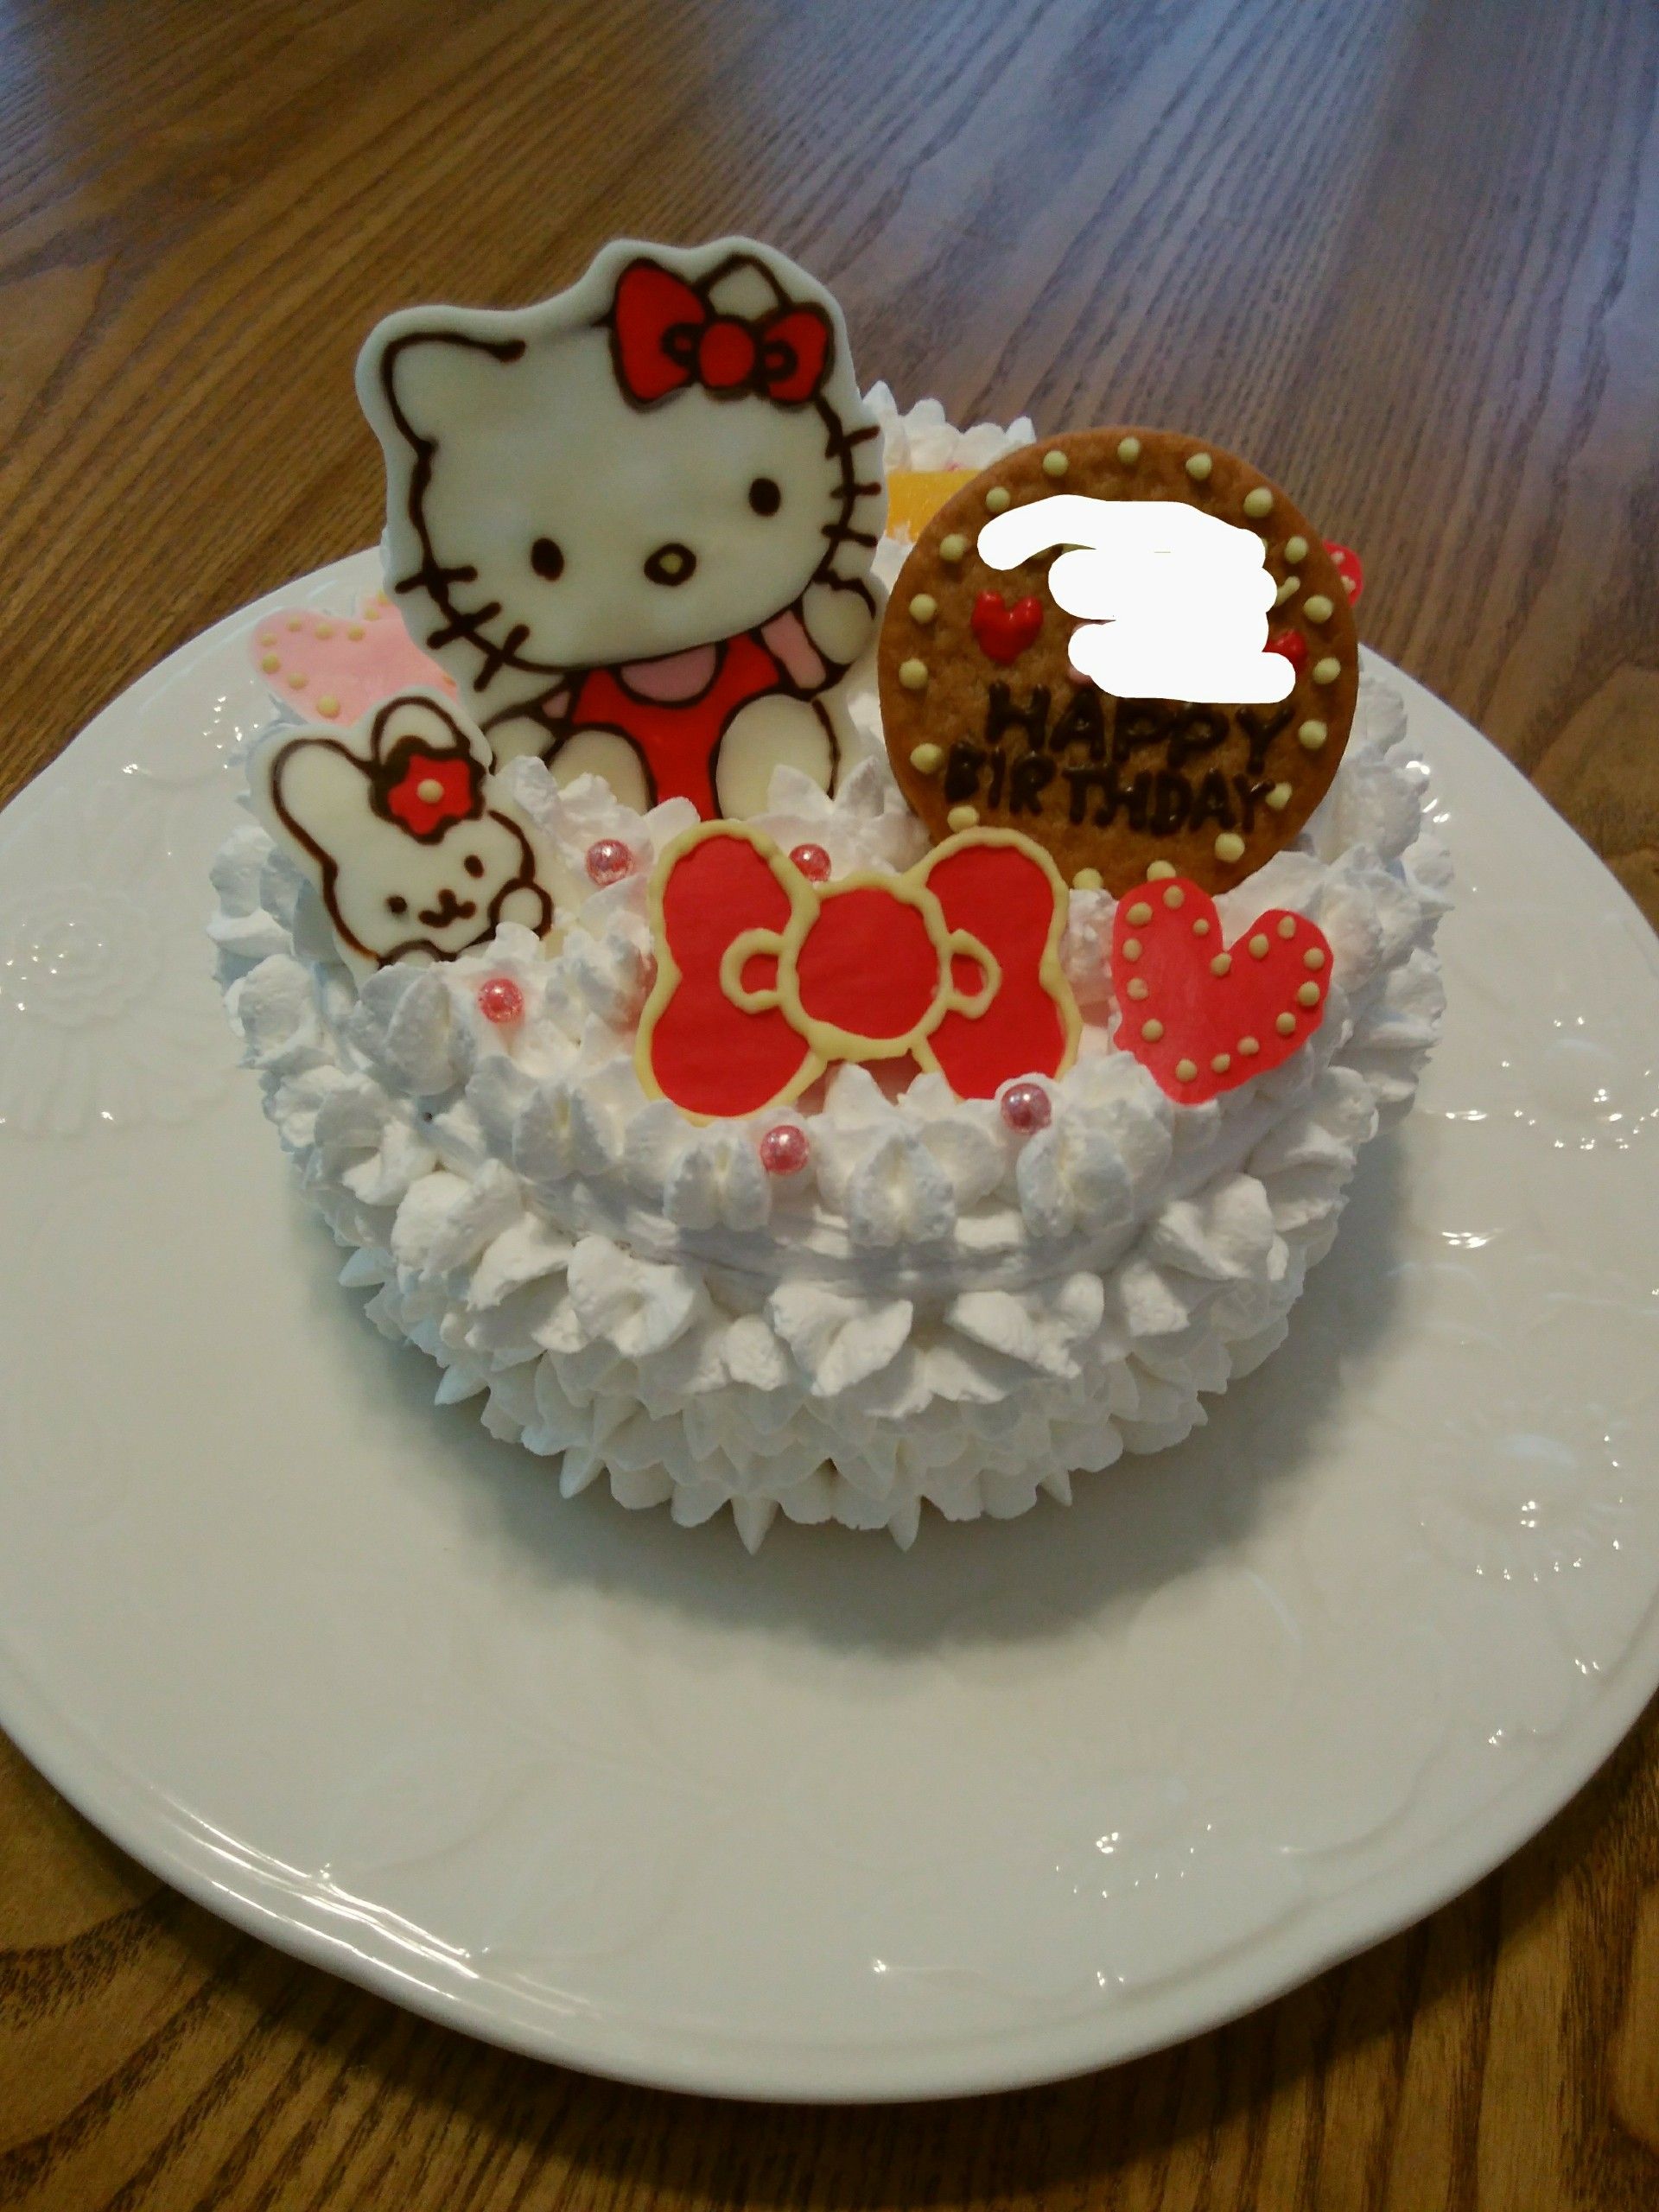 キティちゃんのデコレーションケーキ キャラクター デコレーションケーキ 楽天ブログ